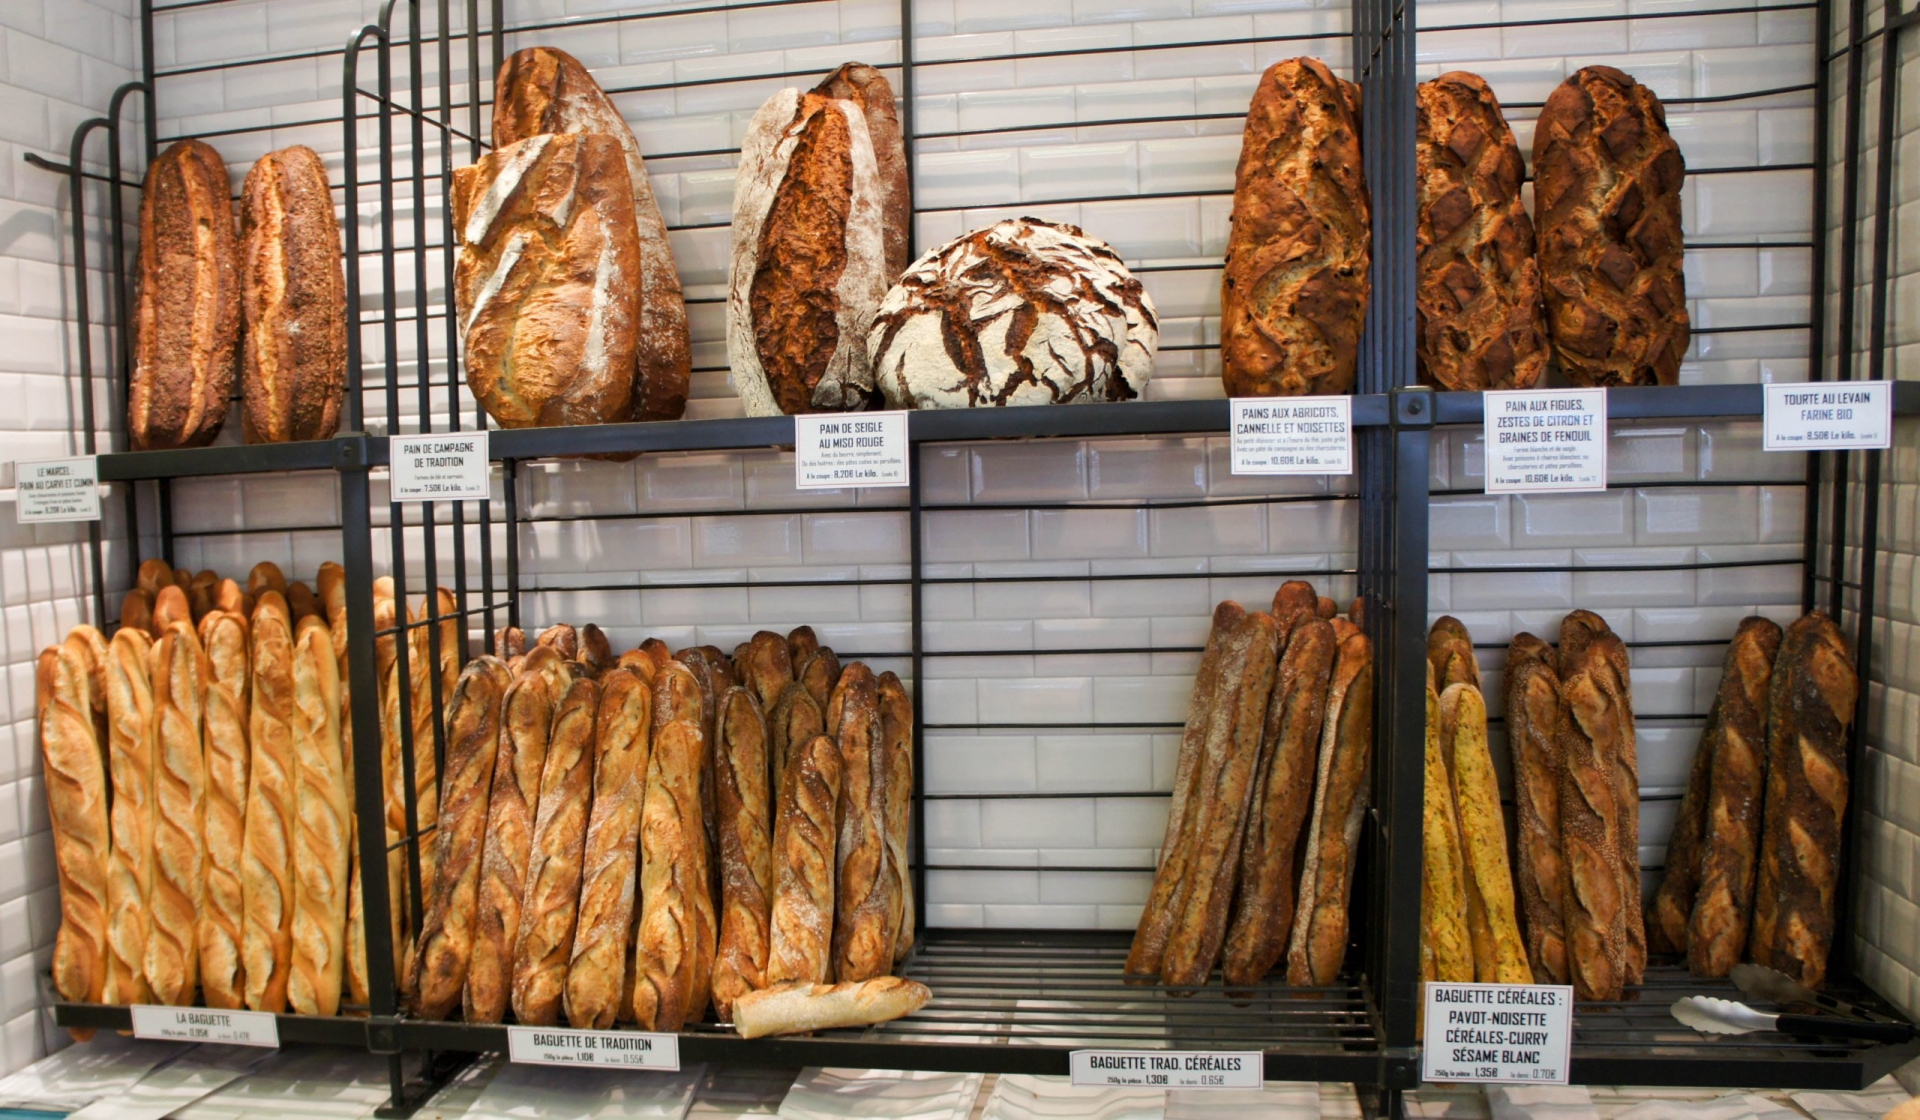 Bánh mì baguette là hình ảnh mang tính biểu tượng nhất của nước Pháp.